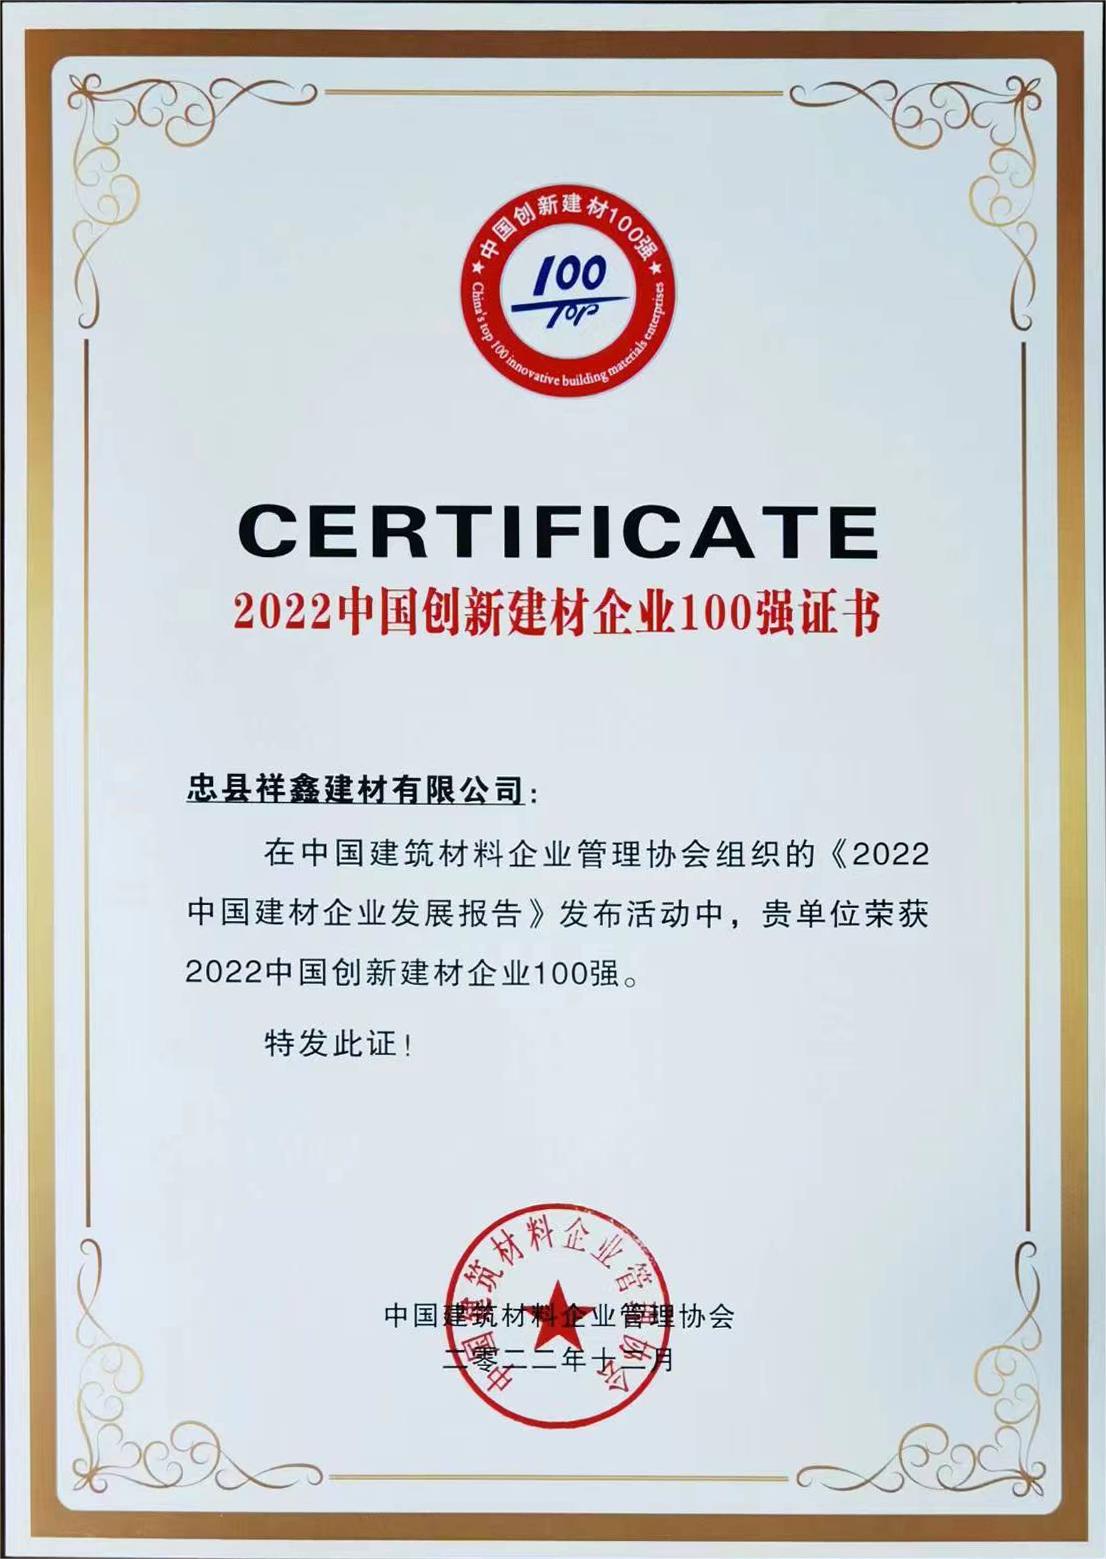 公司榮獲2022年度中國建材企業100強  ?